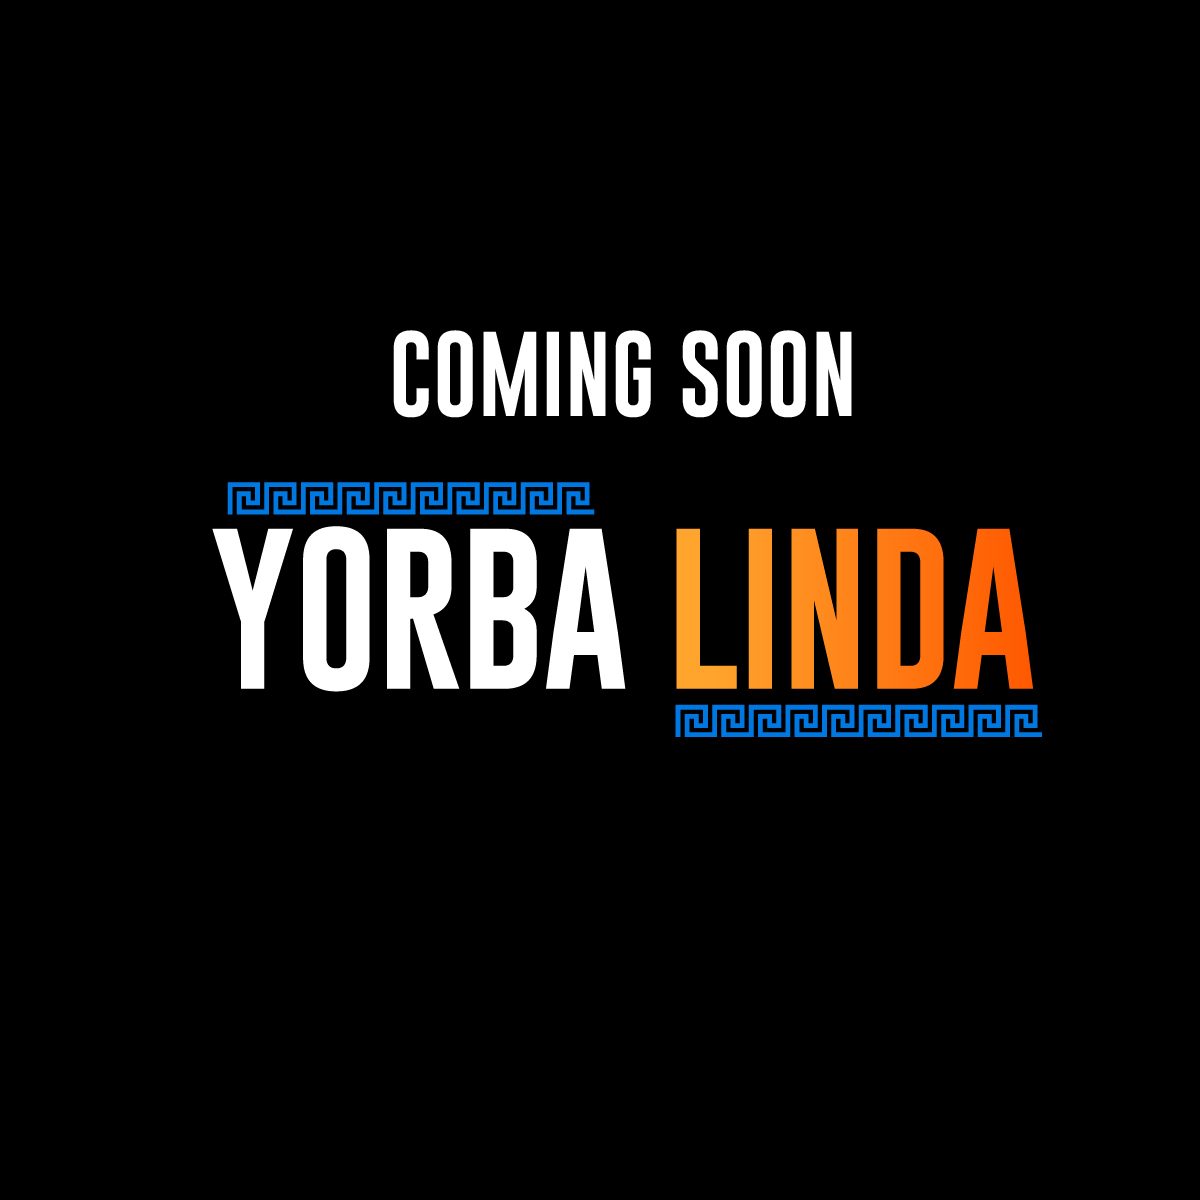 OGP Expands to Yorba Linda